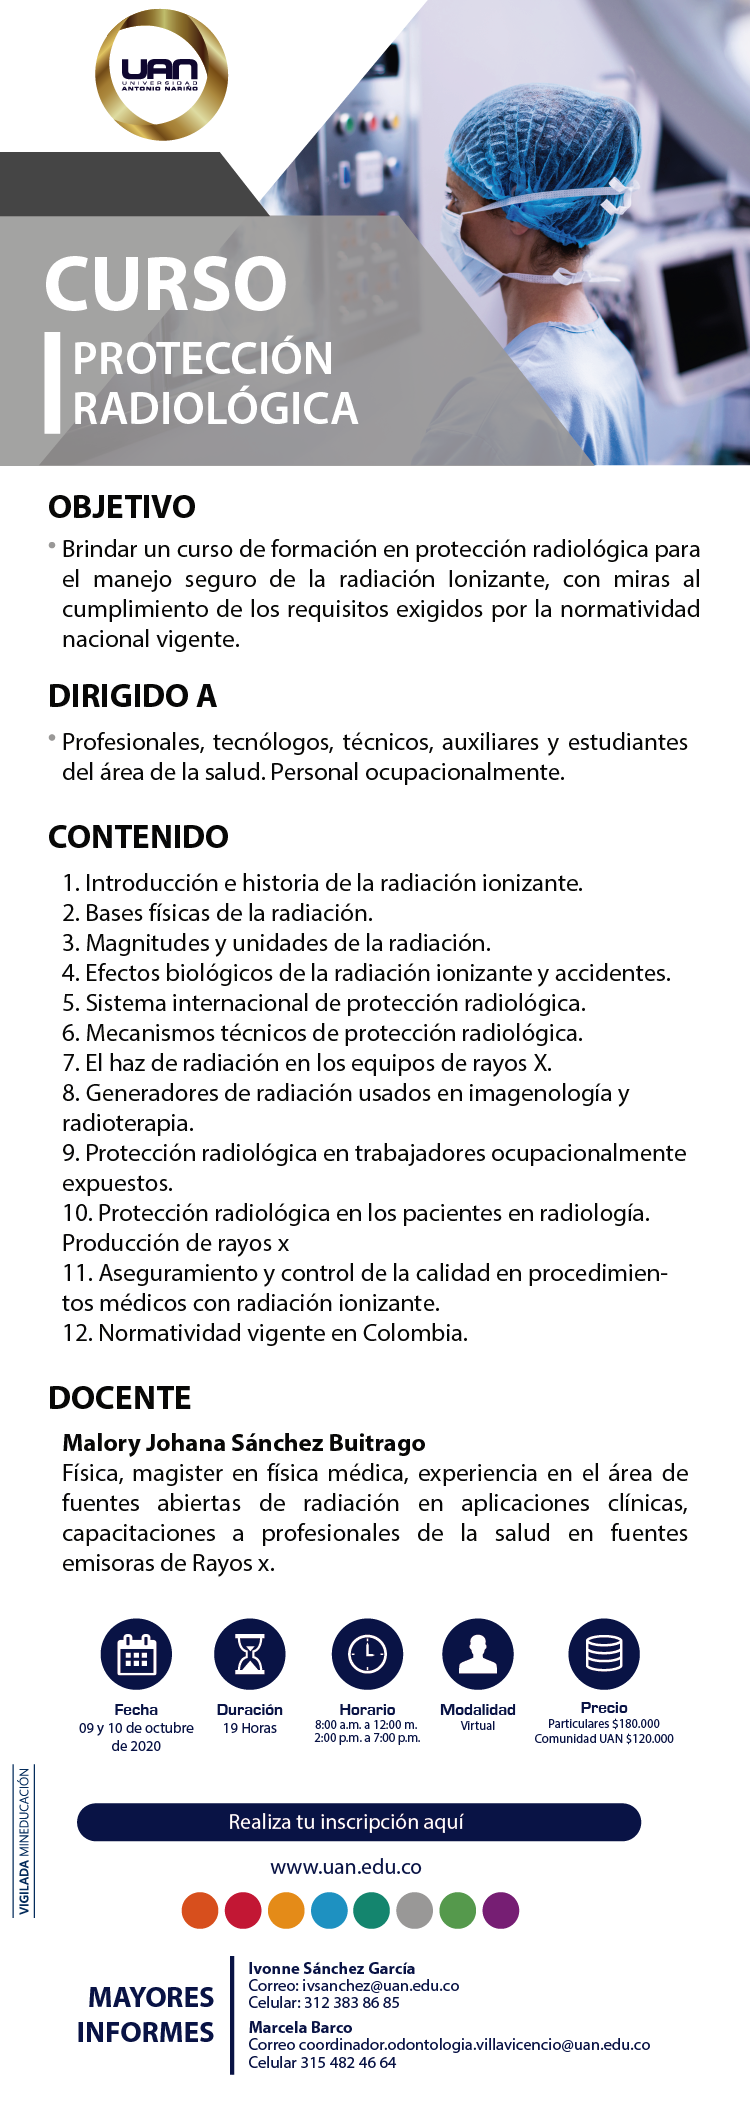 ProteccionRadiologica VillavicencioVirtual2020 M